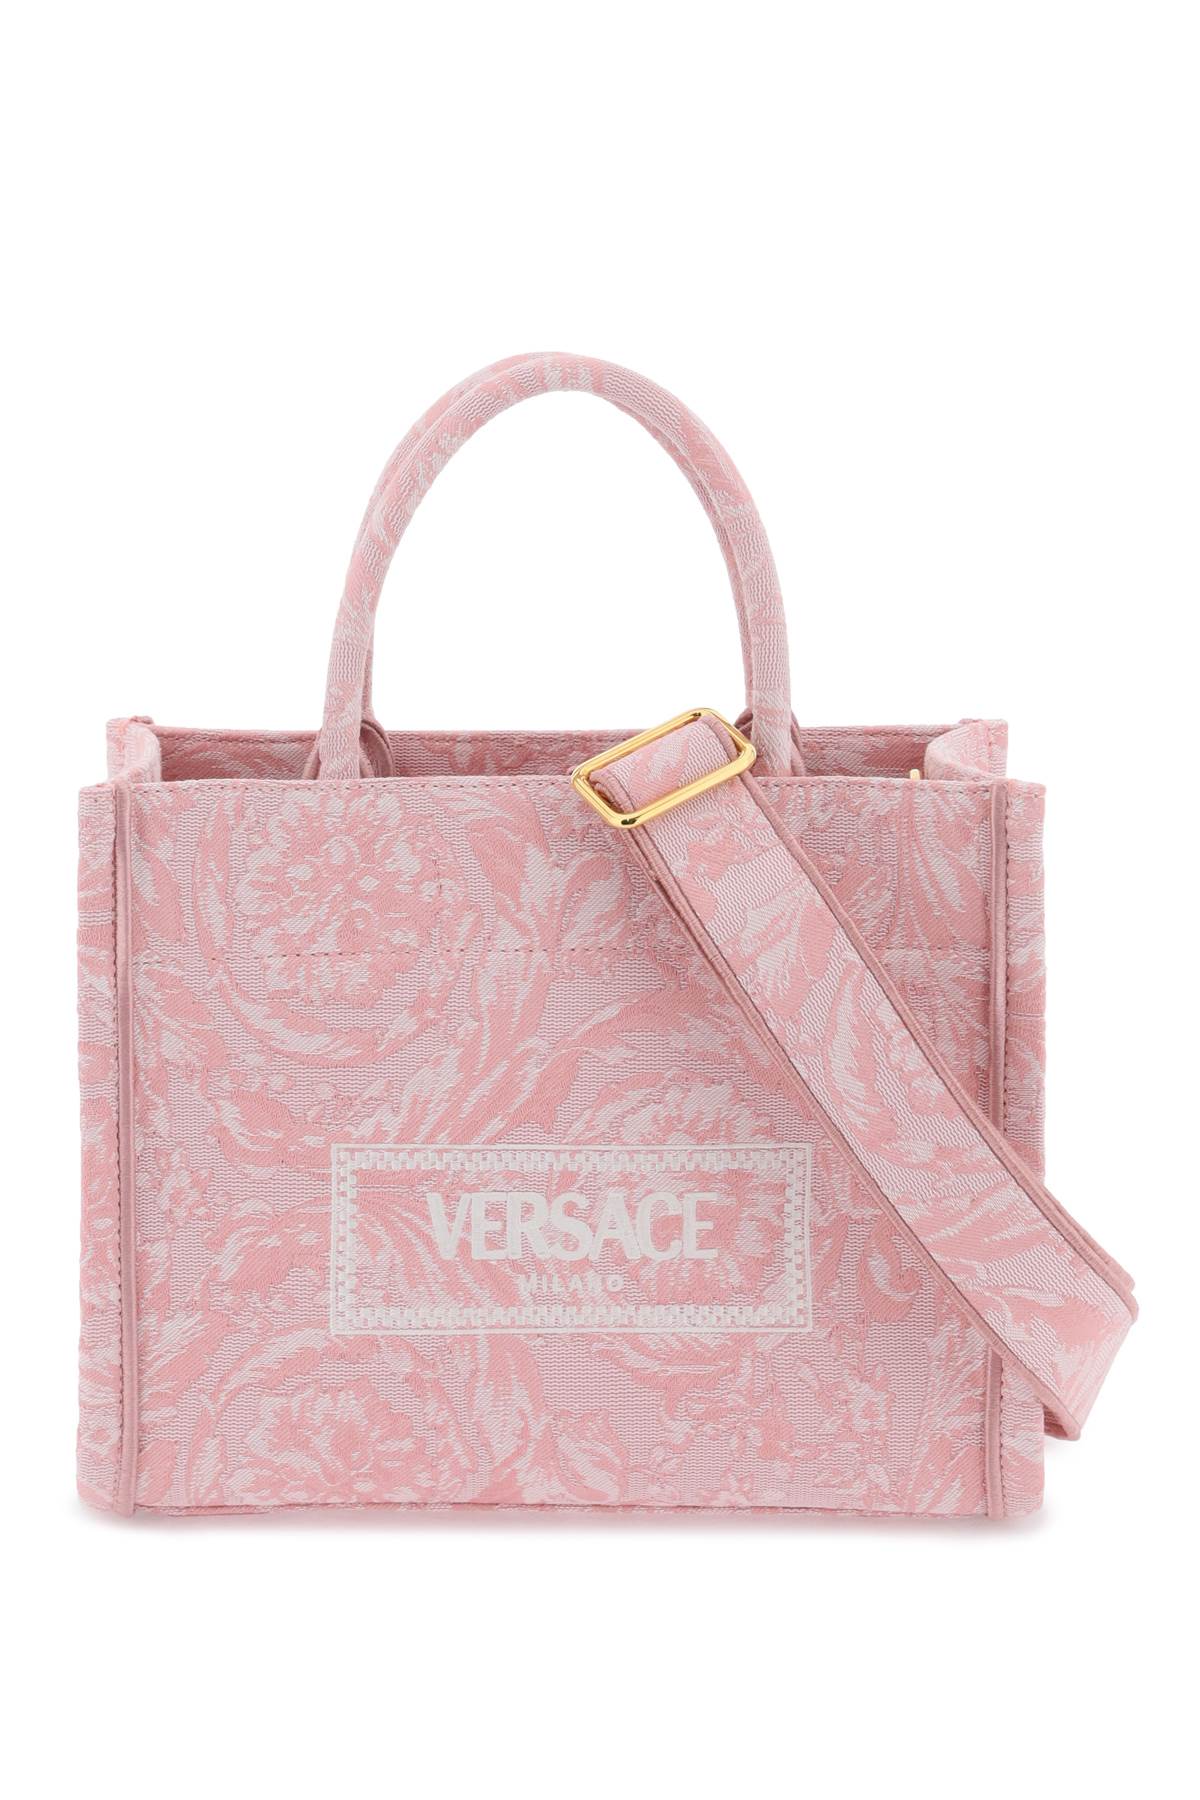 Versace athena barocco small tote bag-0